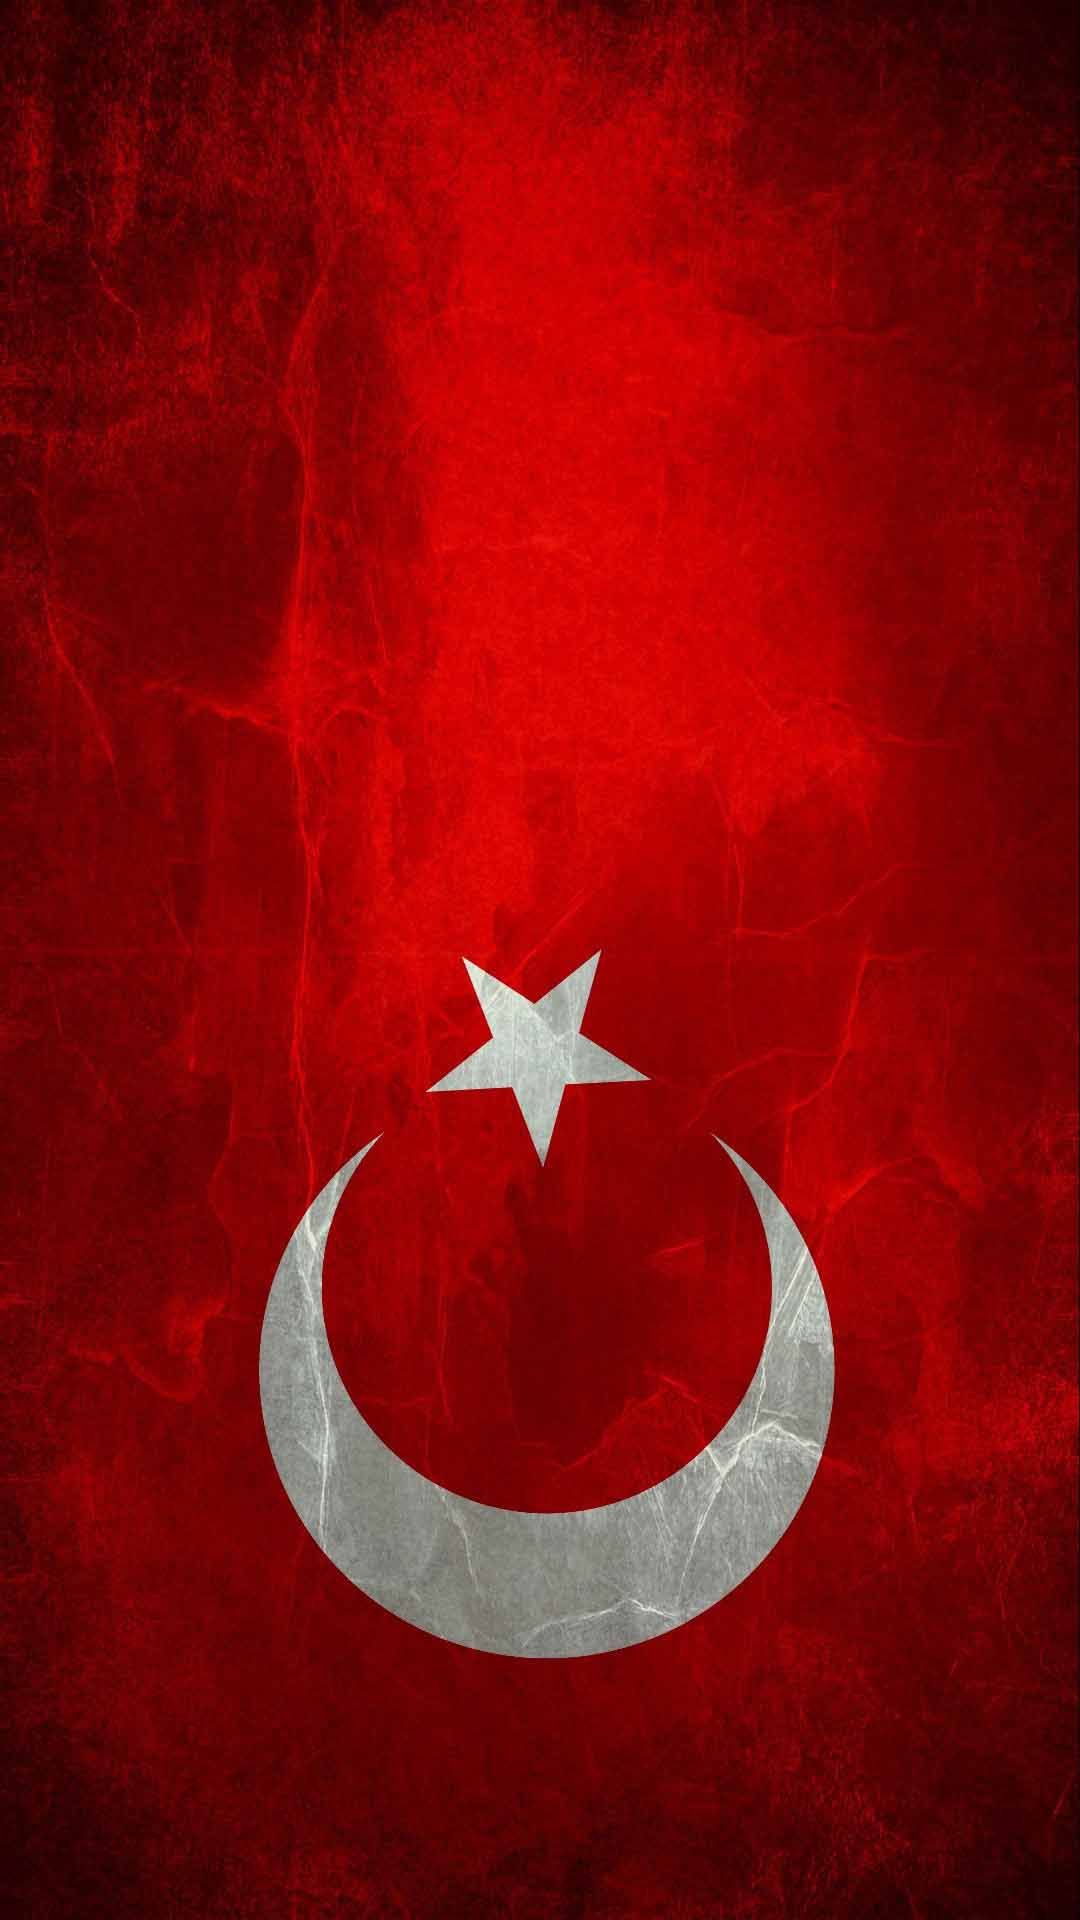 en güzel wallpaper,red,flag,illustration,symbol,crescent